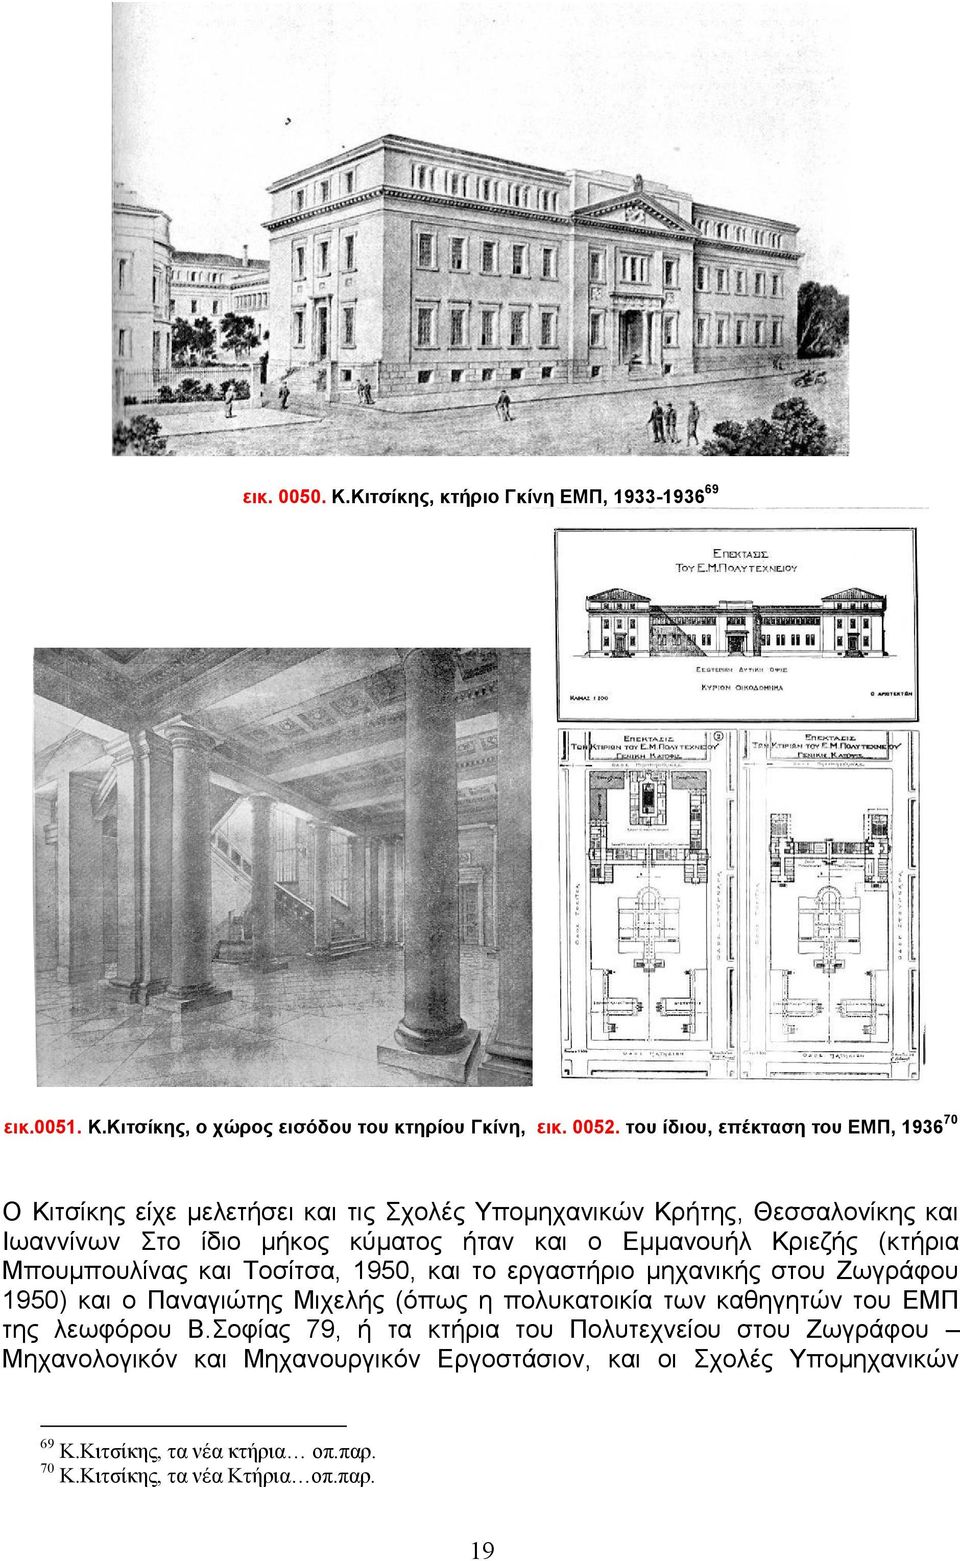 Εμμανουήλ Κριεζής (κτήρια Μπουμπουλίνας και Τοσίτσα, 1950, και το εργαστήριο μηχανικής στου Ζωγράφου 1950) και ο Παναγιώτης Μιχελής (όπως η πολυκατοικία των καθηγητών